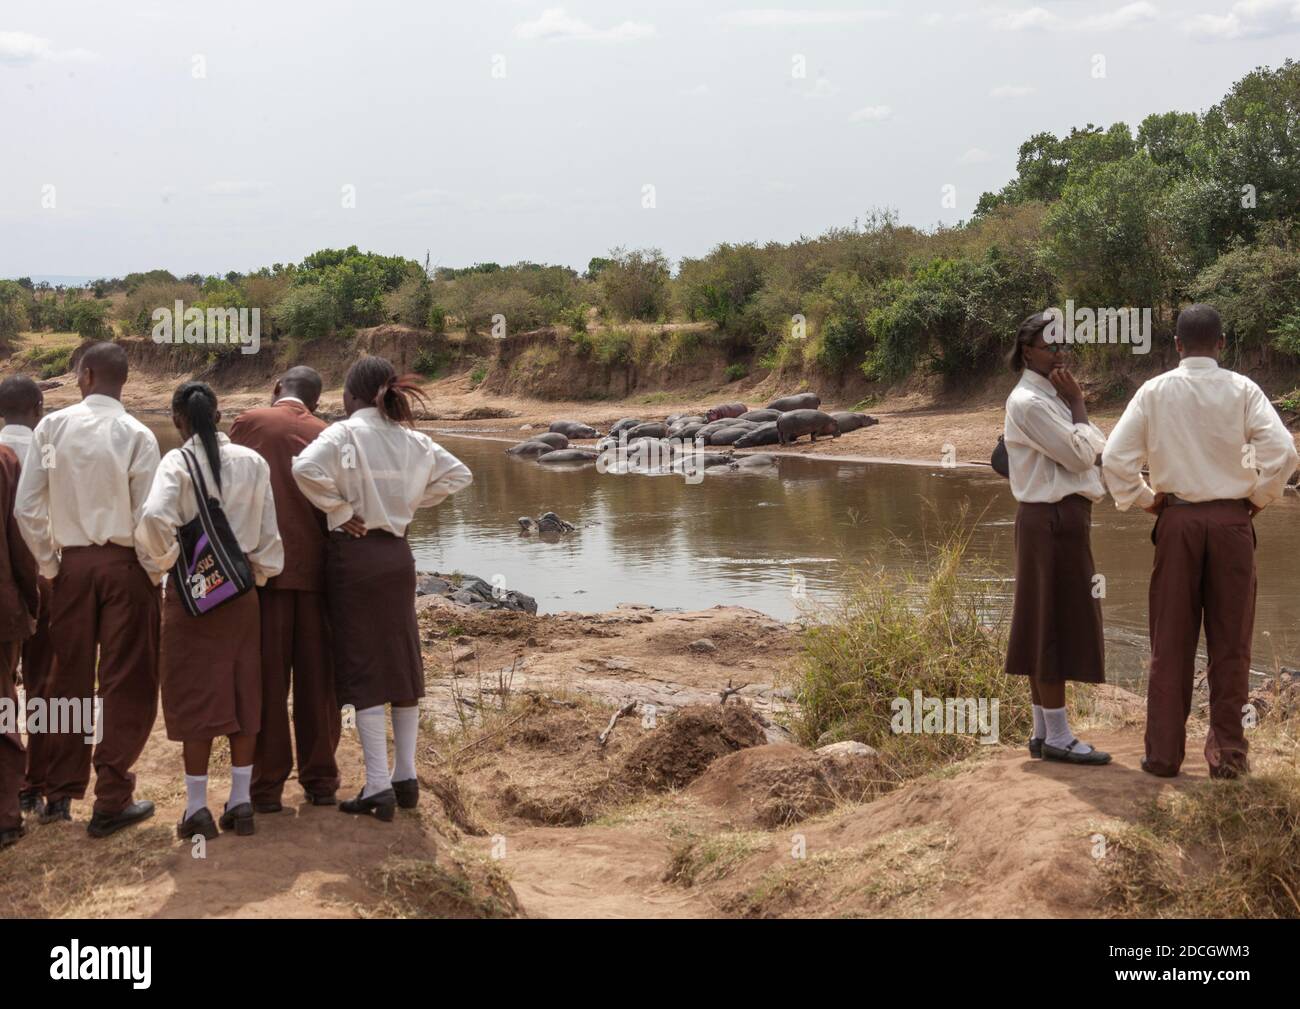 Des élèves kenyans regardent des hippopotames dans une rivière, province de Rift Valley, Maasai Mara, Kenya Banque D'Images